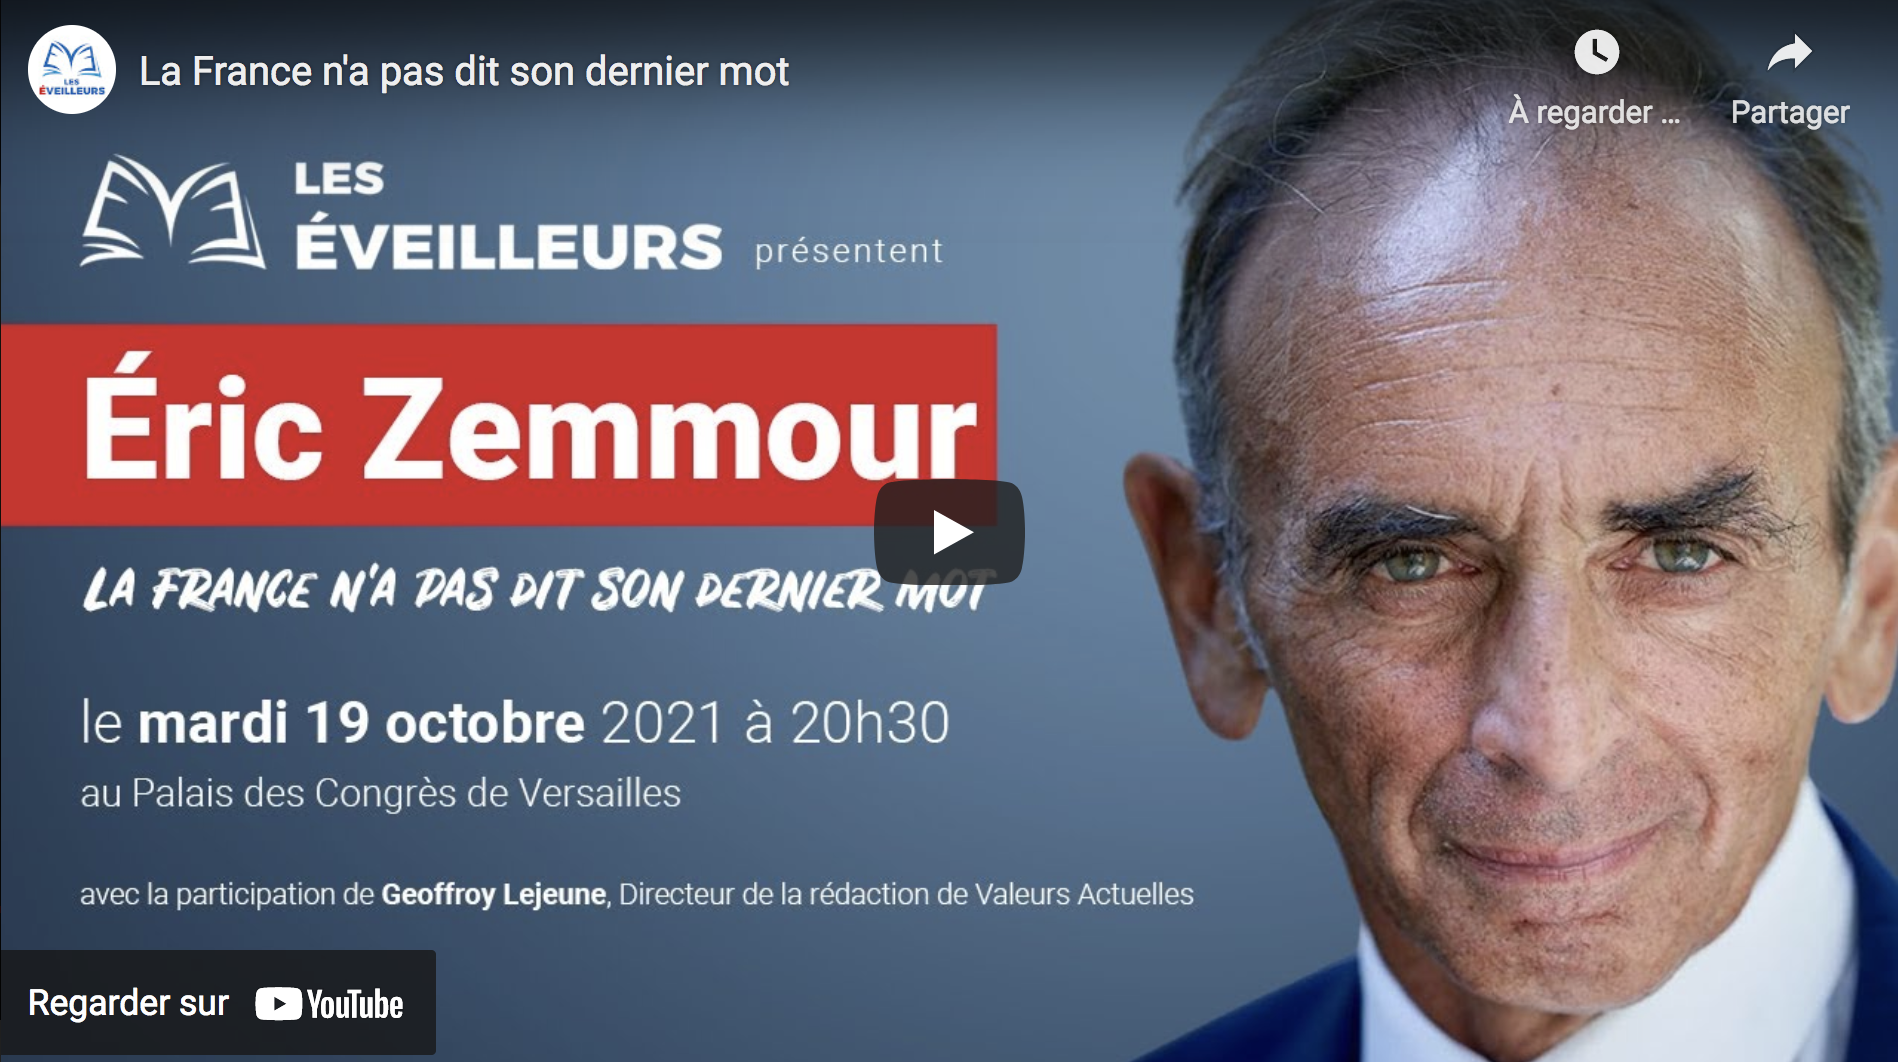 “La France n’a pas dit son dernier mot” : la rencontre entre Éric Zemmour et les Versaillais mardi 19 octobre 2021 (VIDÉO)